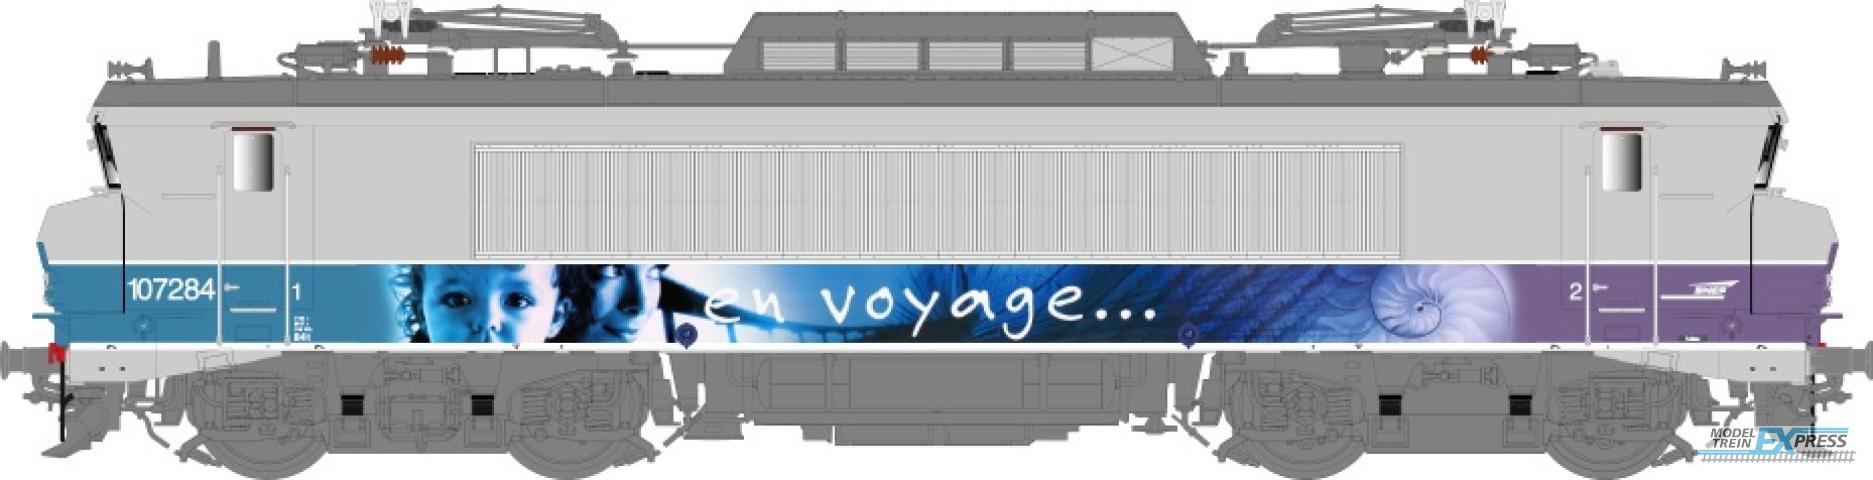 LS Models 10205S BB 7200, grijs/paars, En Voyage, pet logo, front nummer, grote cabine  /  Ep. V  /  SNCF  /  HO  /  DC SOUND  /  1 P.